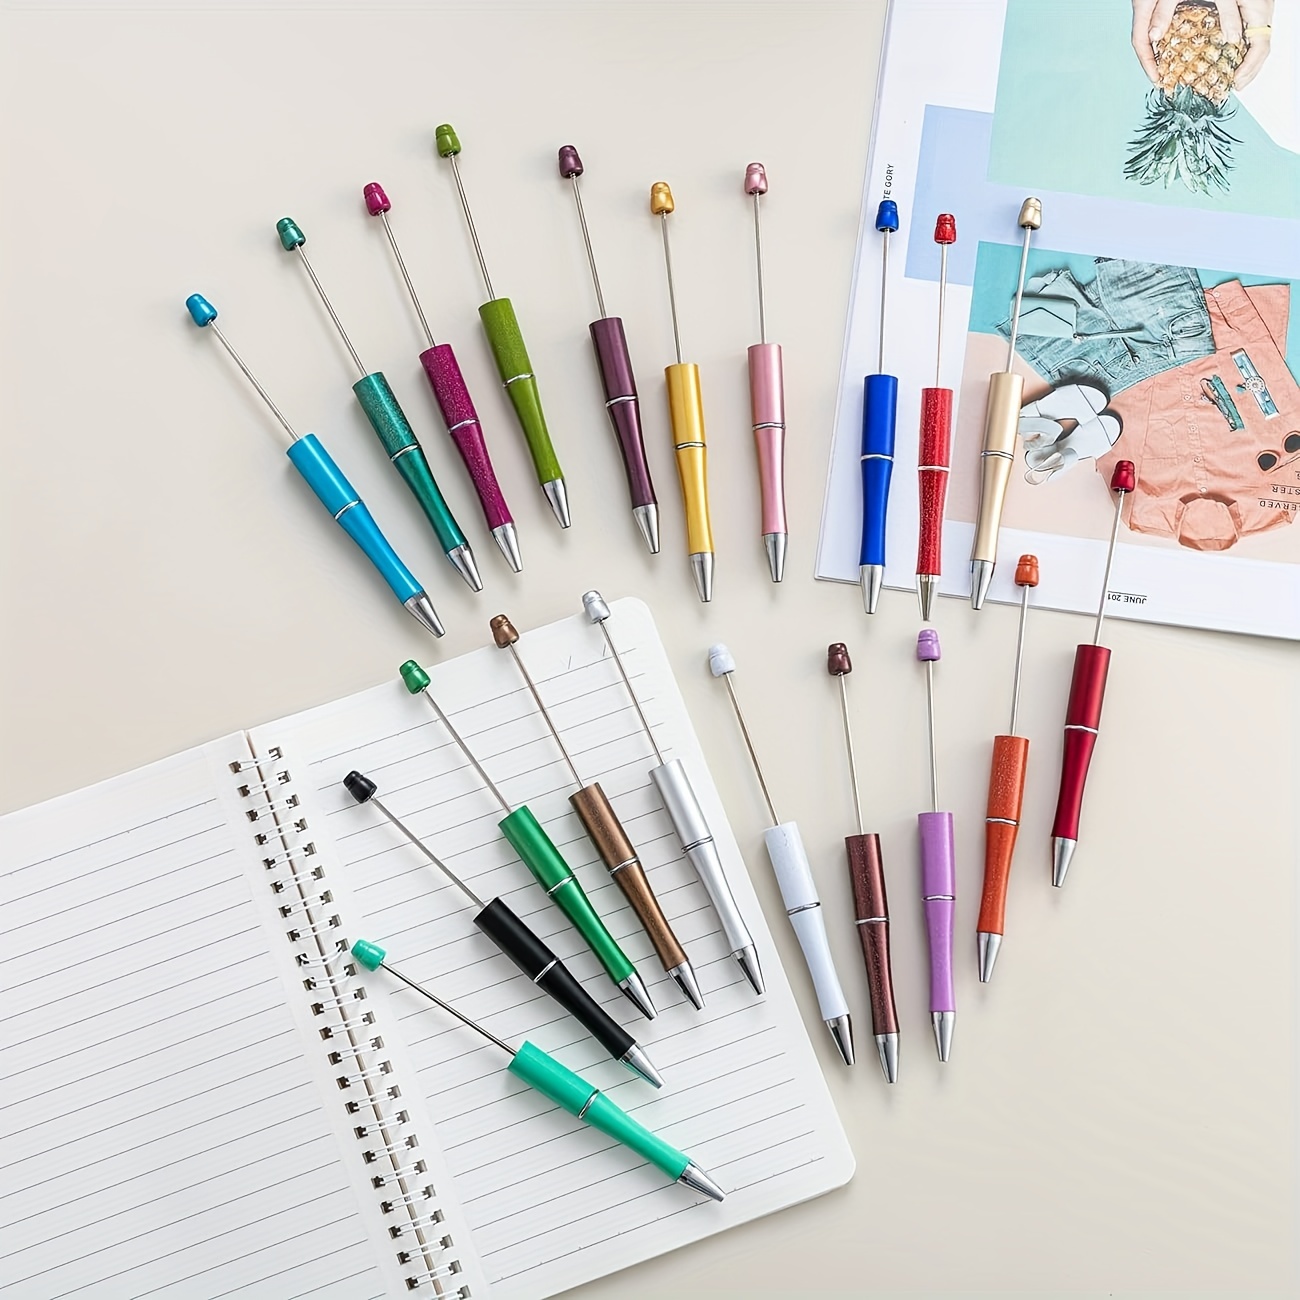 16 Set Plastic Ball Beadable Pens Bulk DIY Bead Pen Making Kit,For Kids  Student School Office Gifts 